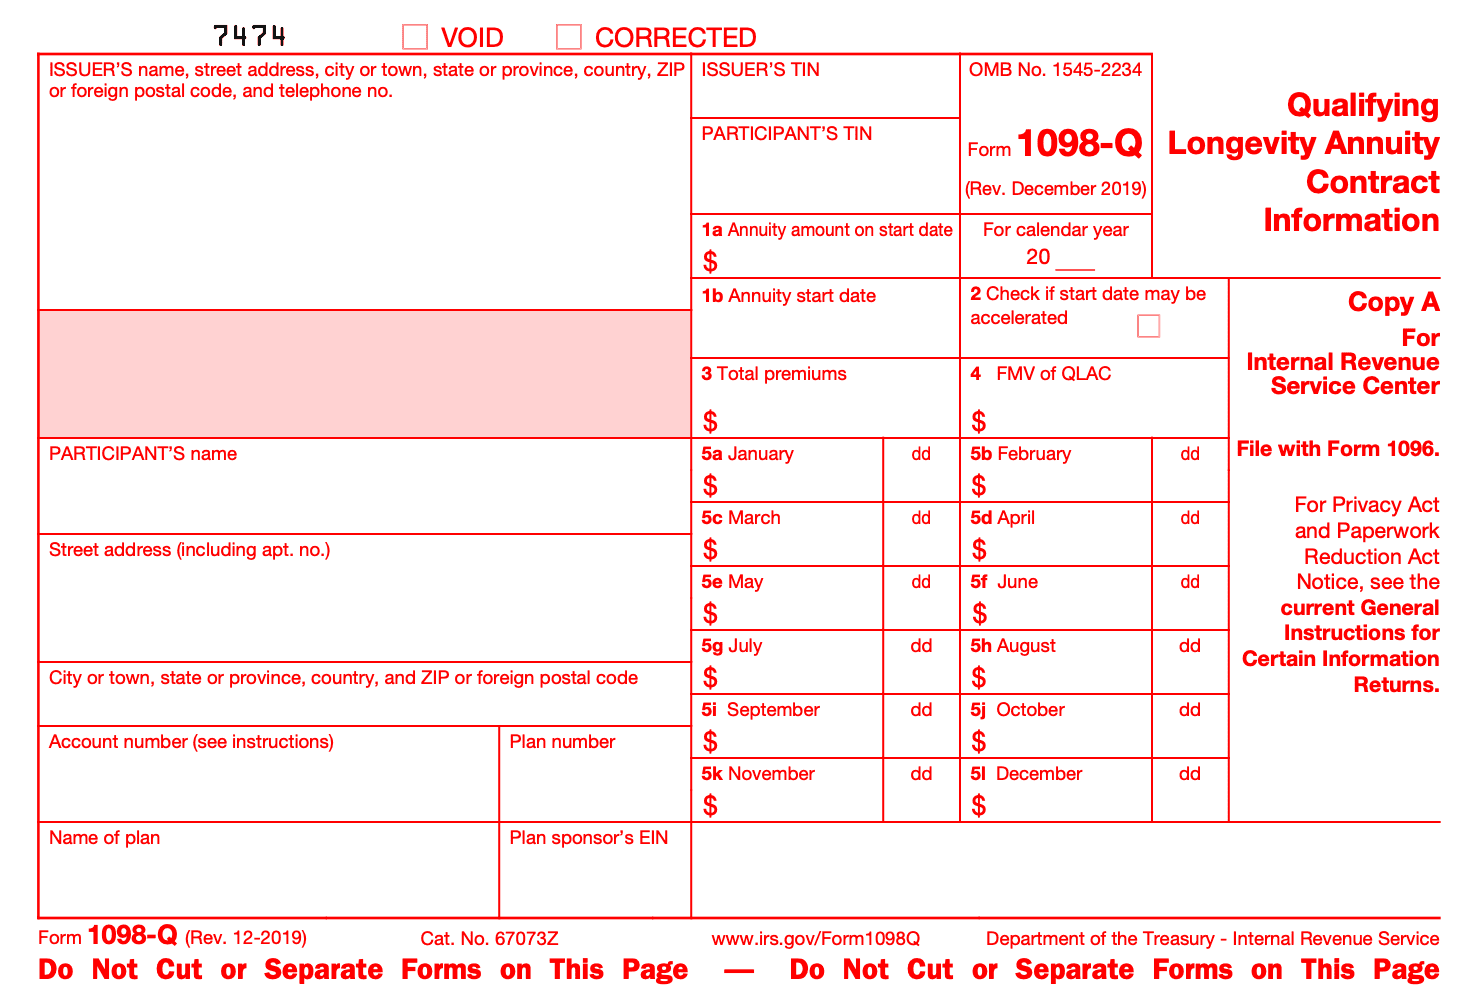 form-1098-q-copy-a.png